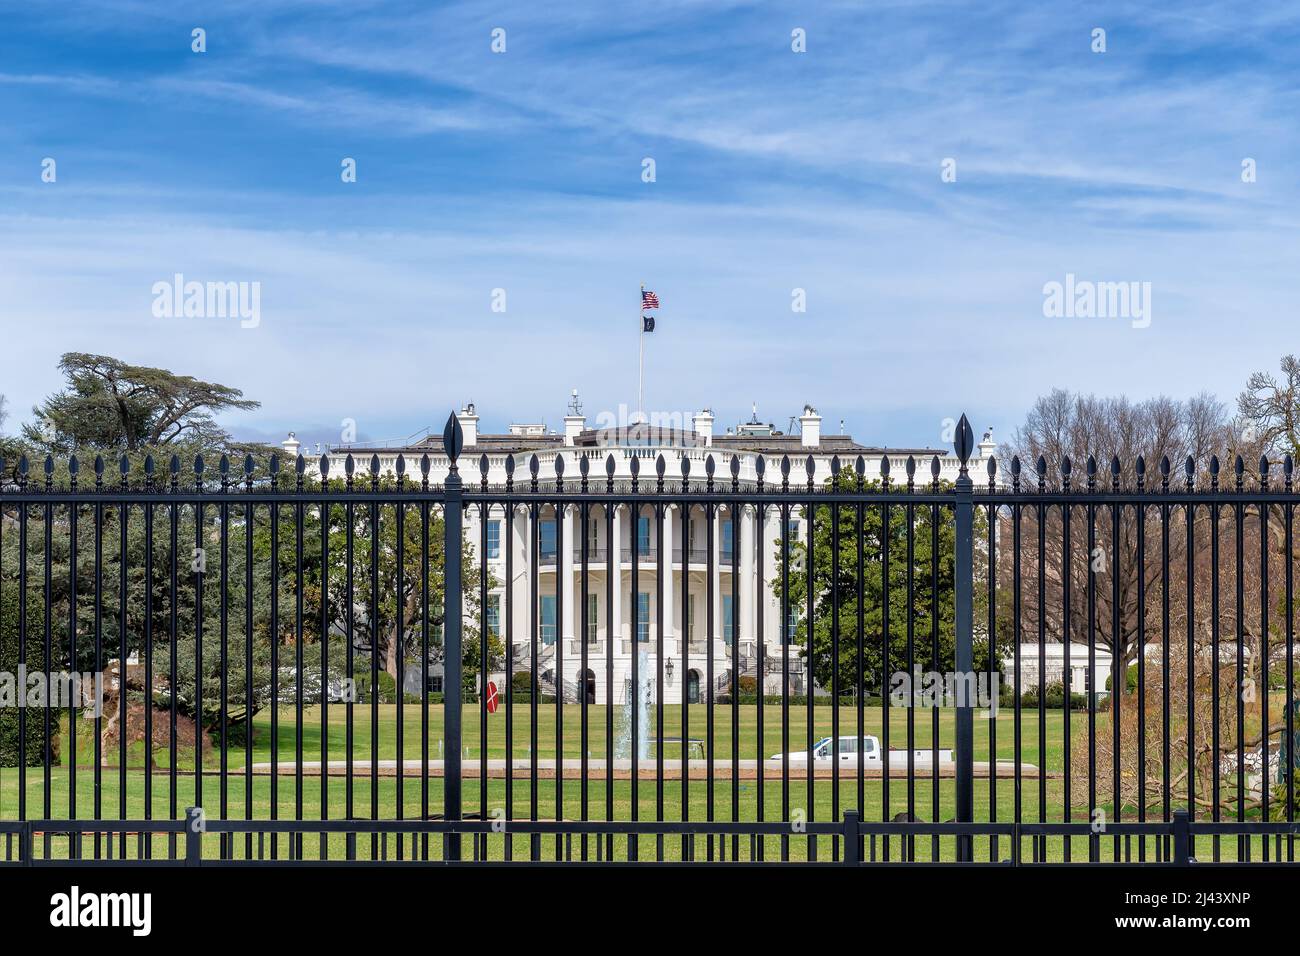 The White House in Washington DC Stock Photo